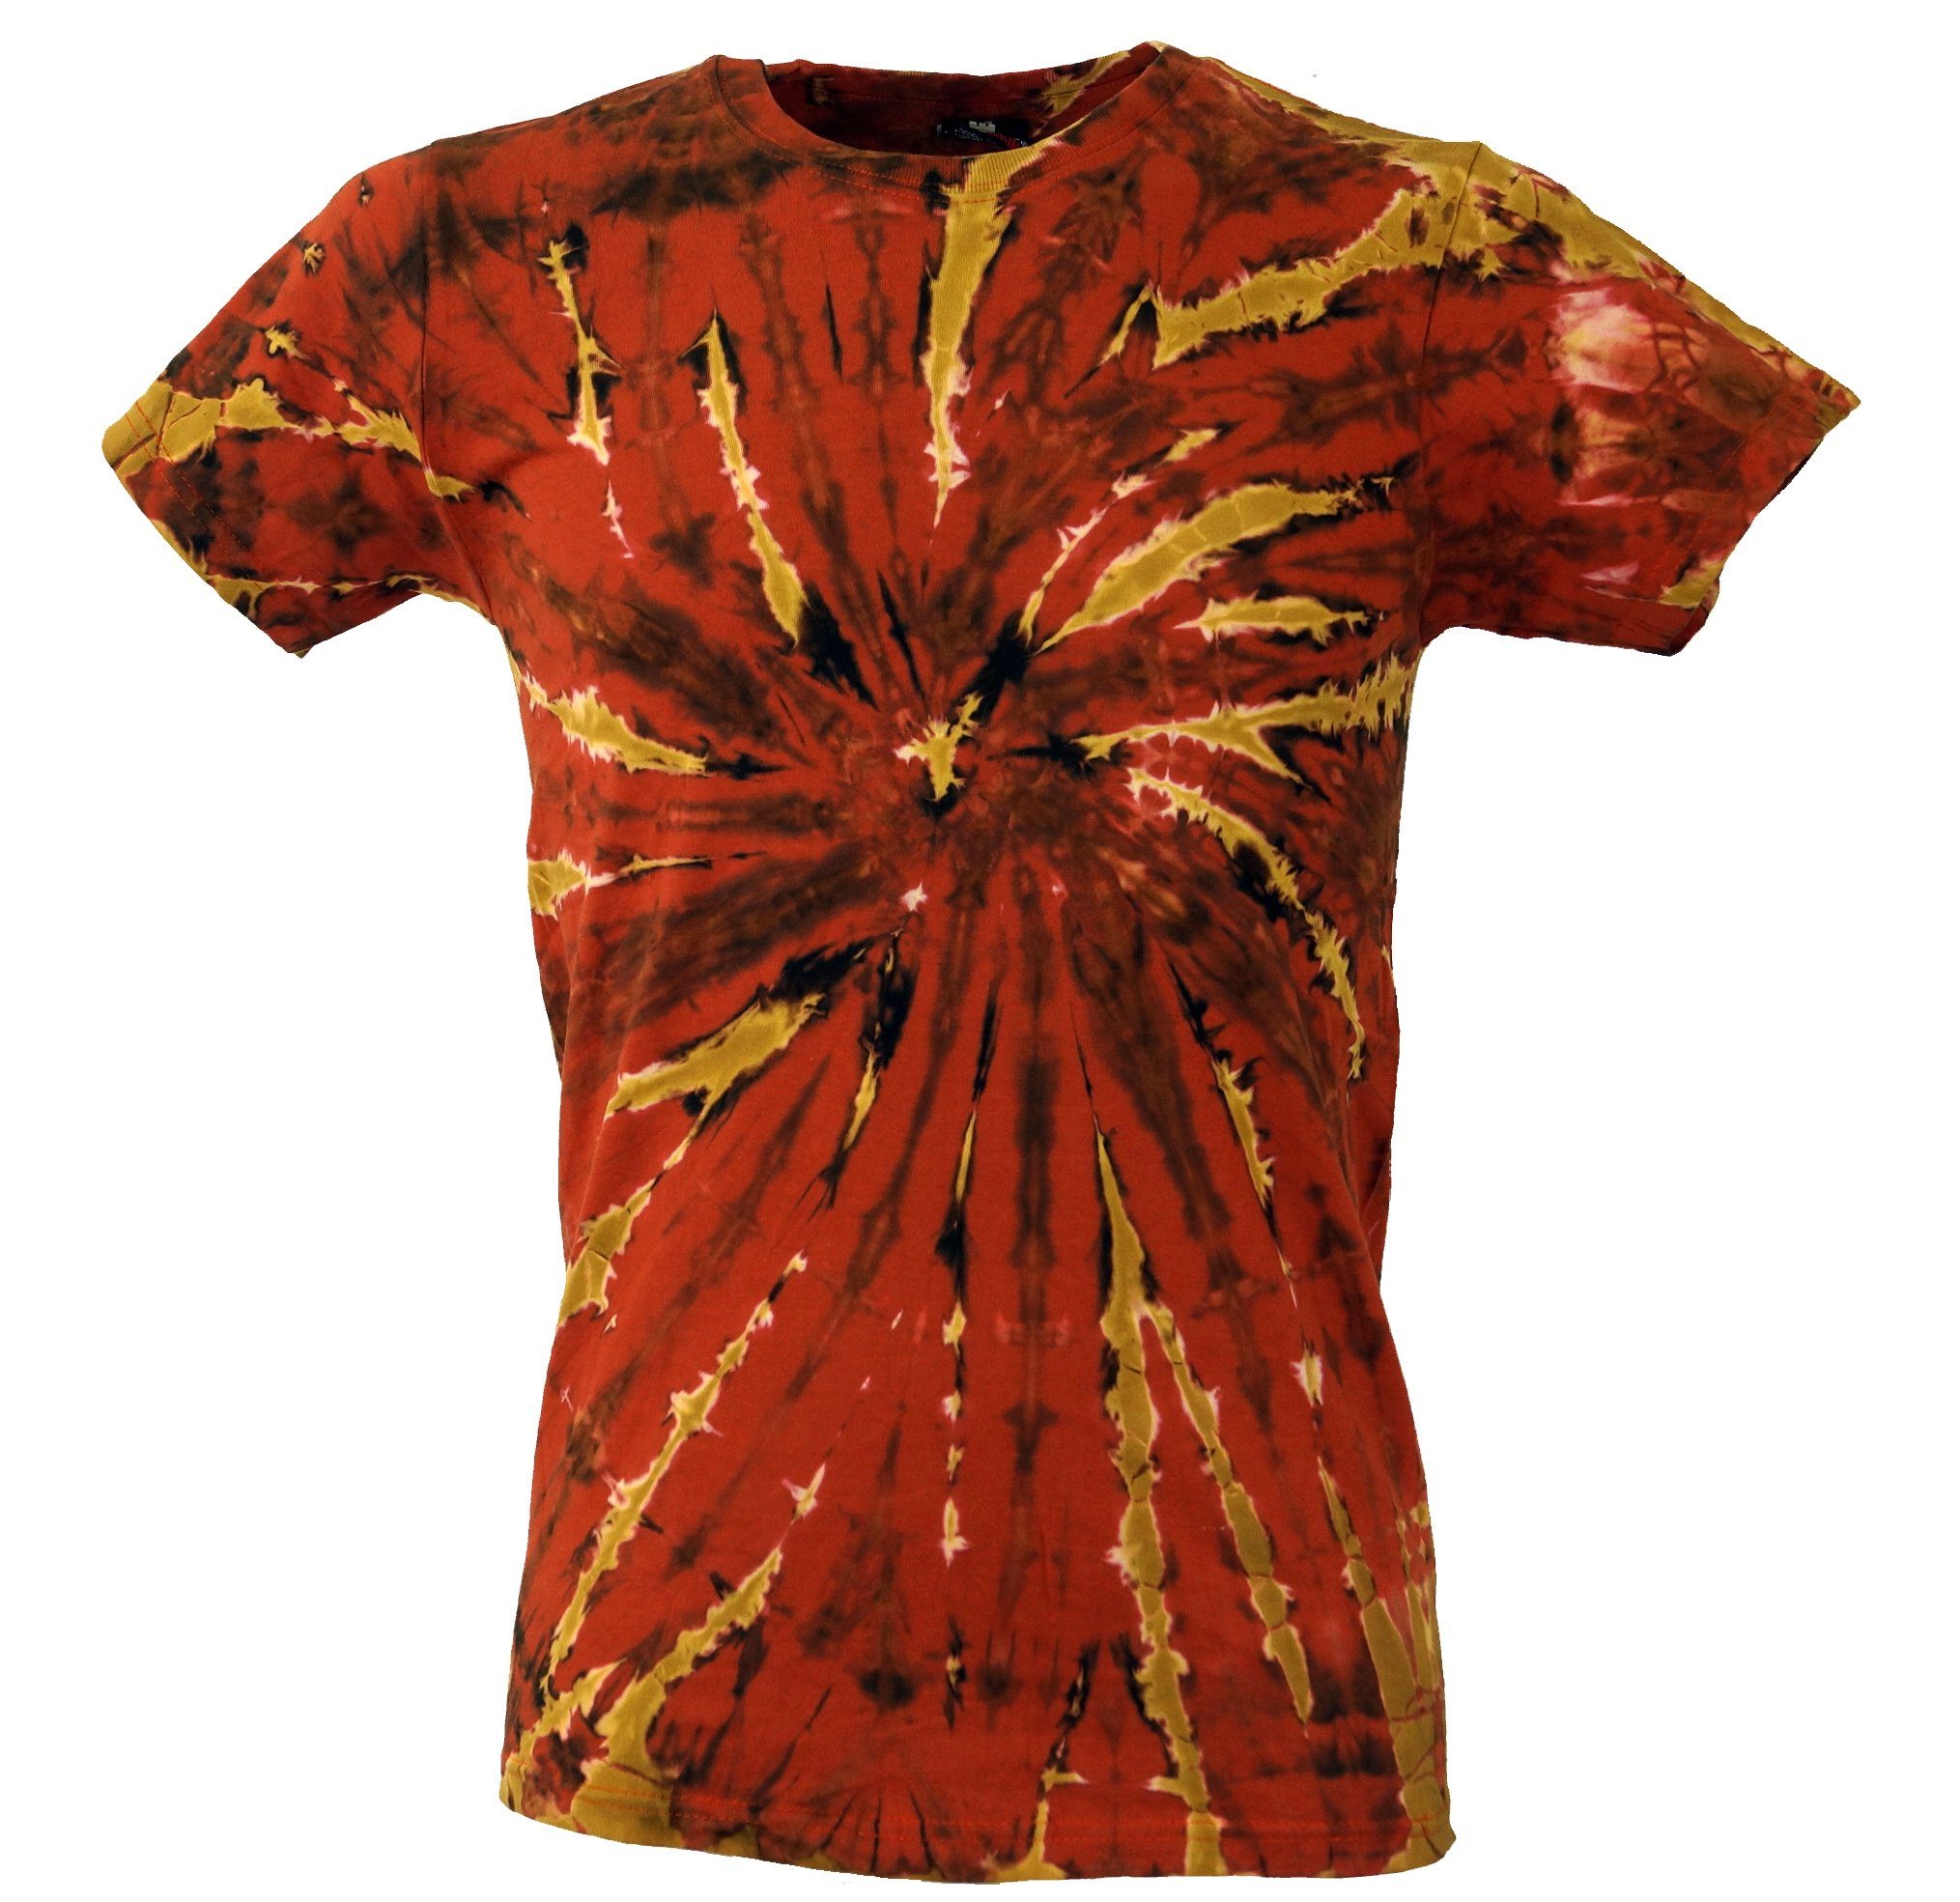 Guru-Shop T-Shirt Batik T-Shirt, Herren Kurzarm Tie Dye Shirt -.. Handarbeit, Hippie, Festival, Goa Style, alternative Bekleidung rostorange